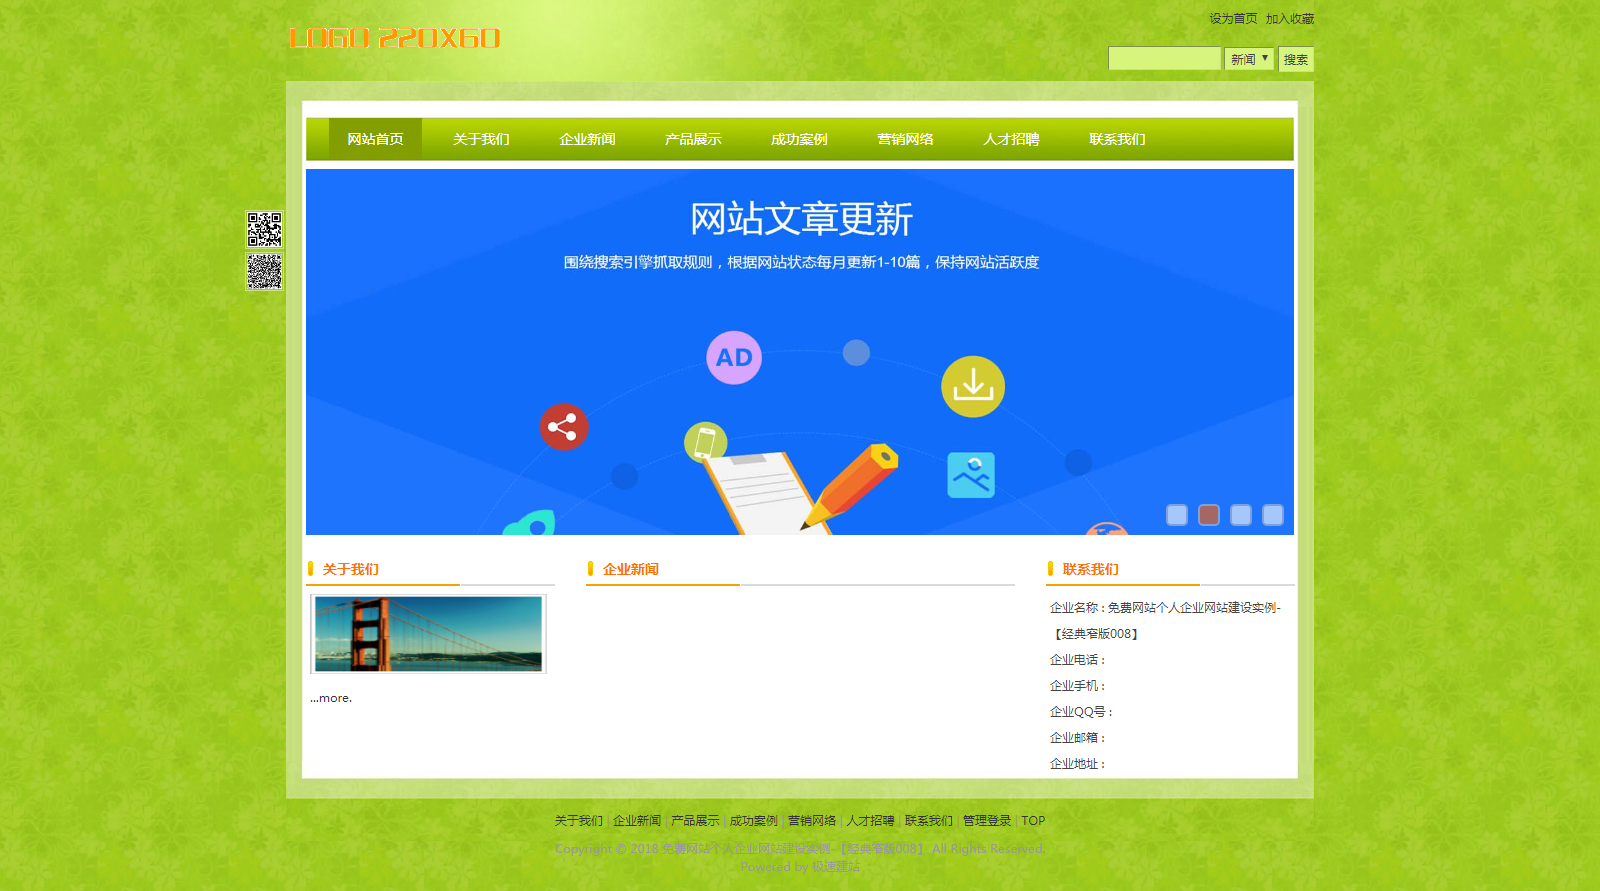 清新绿经典窄版免费网站个人企业自助建站模板-008#网站建设 (1).png